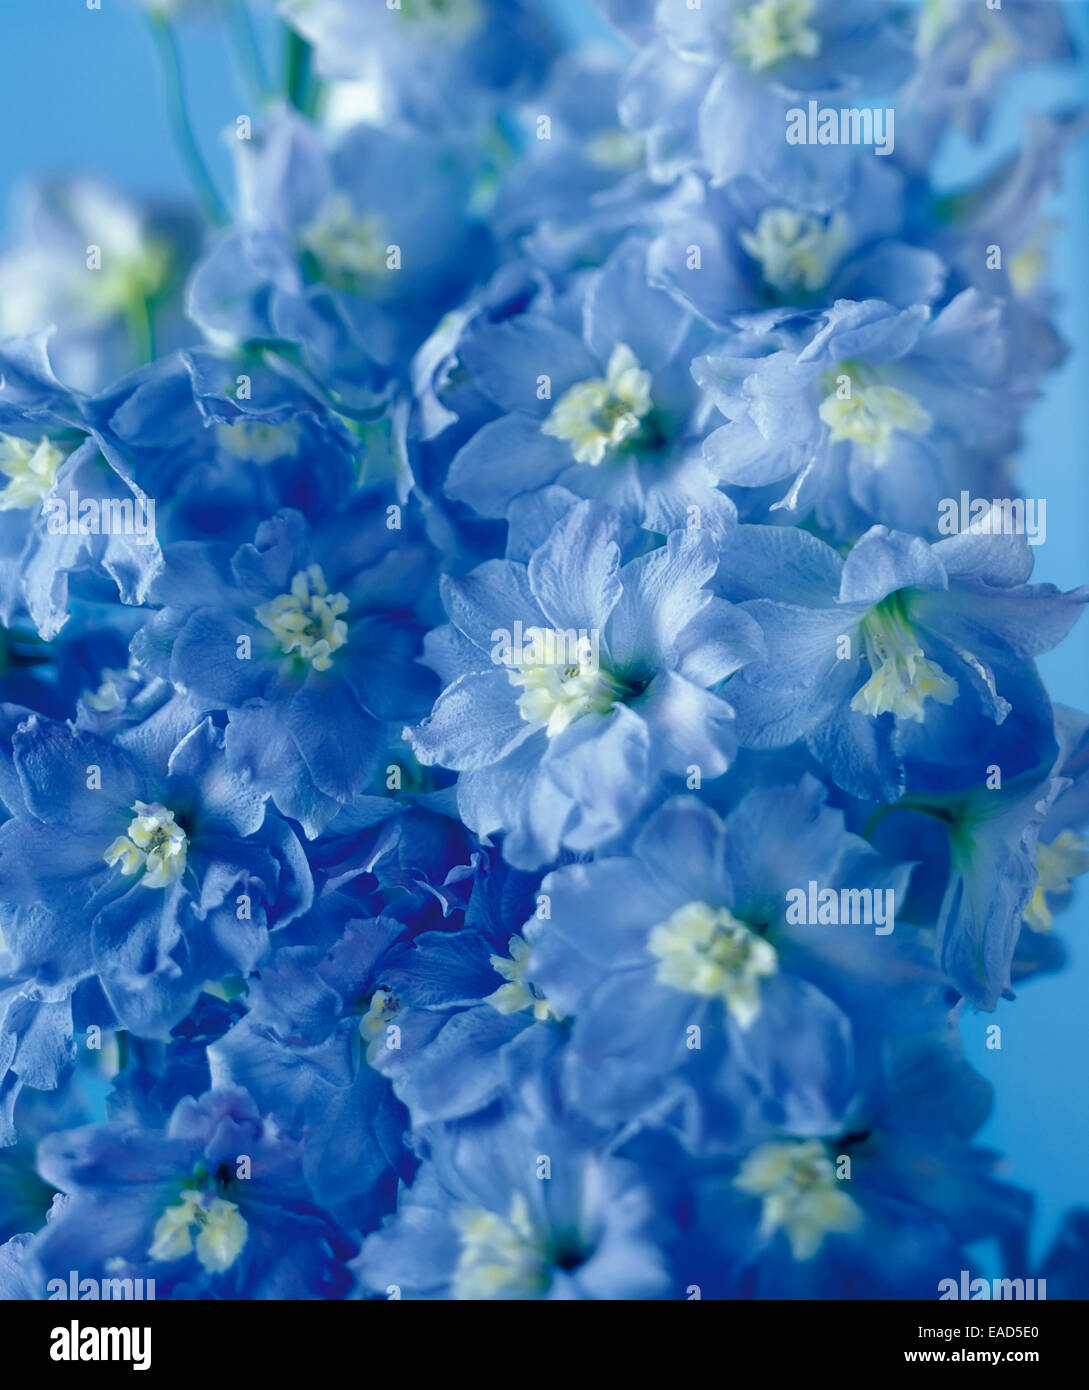 Delphinium, Delphinium, Blue subject. Stock Photo